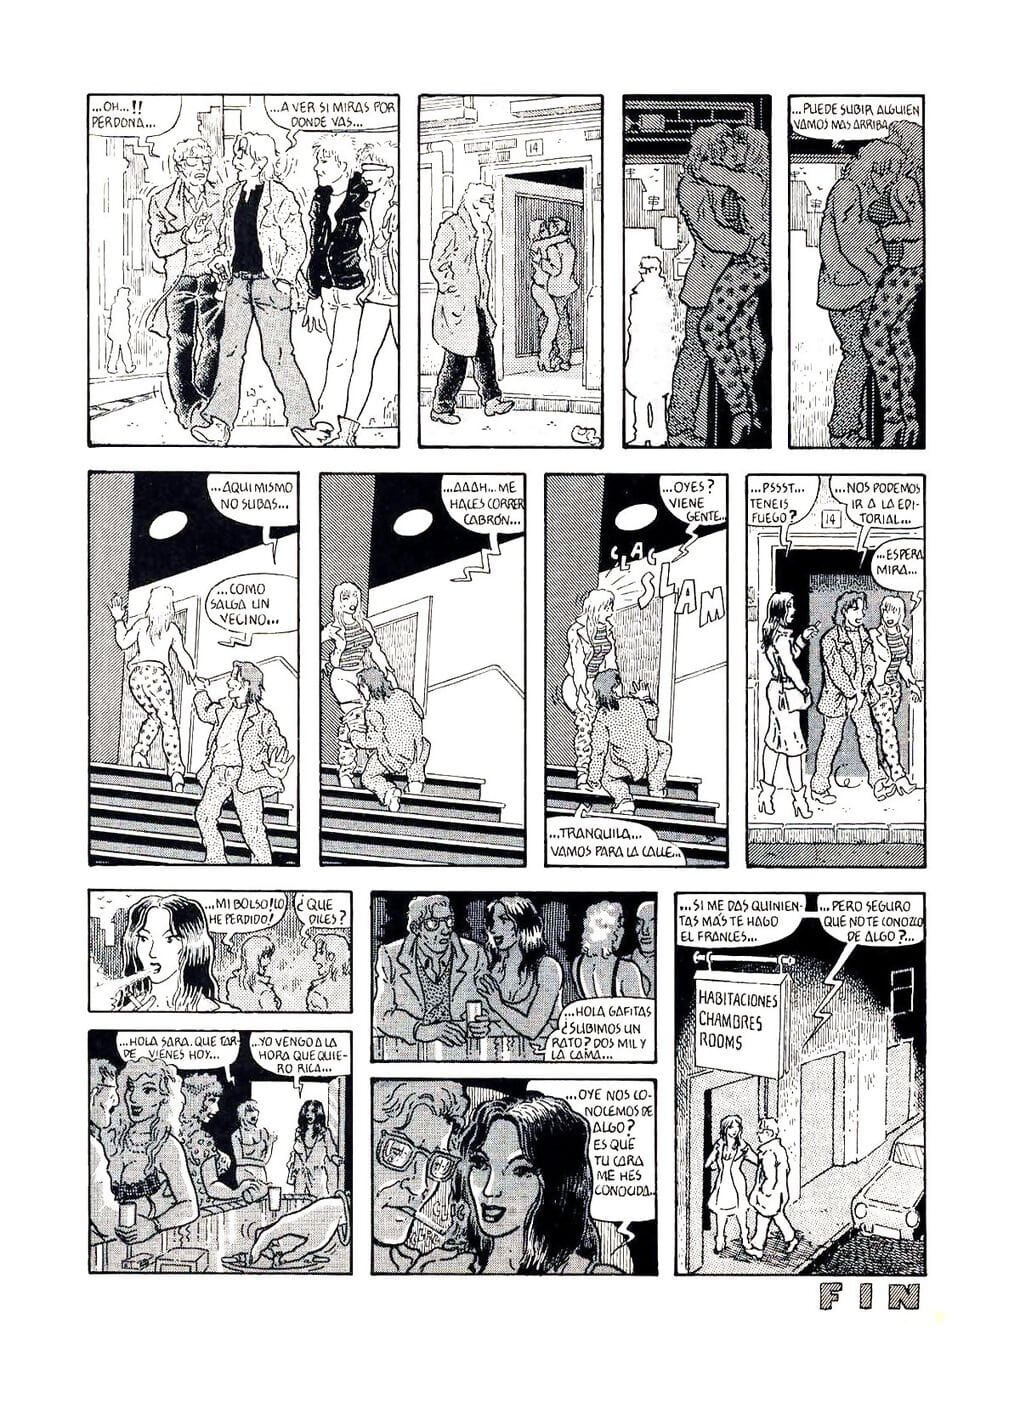 Maria Lanuit - part 2 page 1